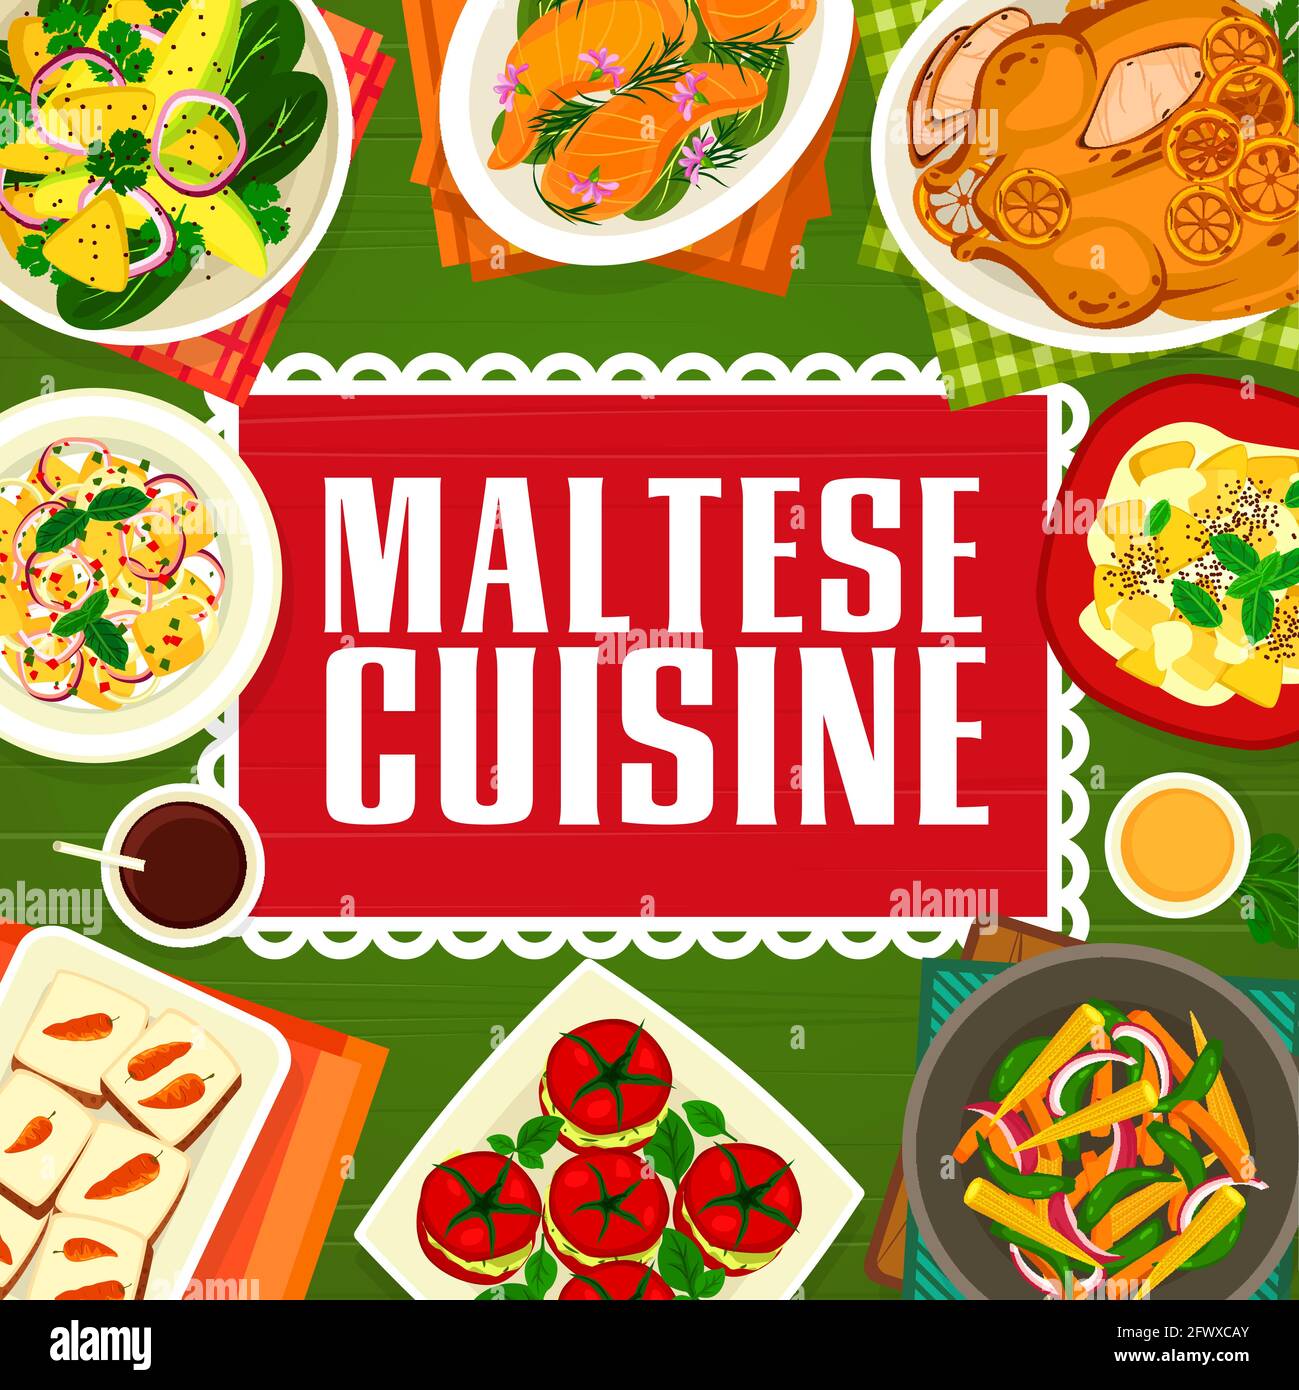 Cucina maltese cupcake di carote vettoriali, pesce di salmone con salsa al limone e pomodori ripieni con carne di granchio. Insalata di frutta con formaggio cremoso, salumi di verdure Illustrazione Vettoriale